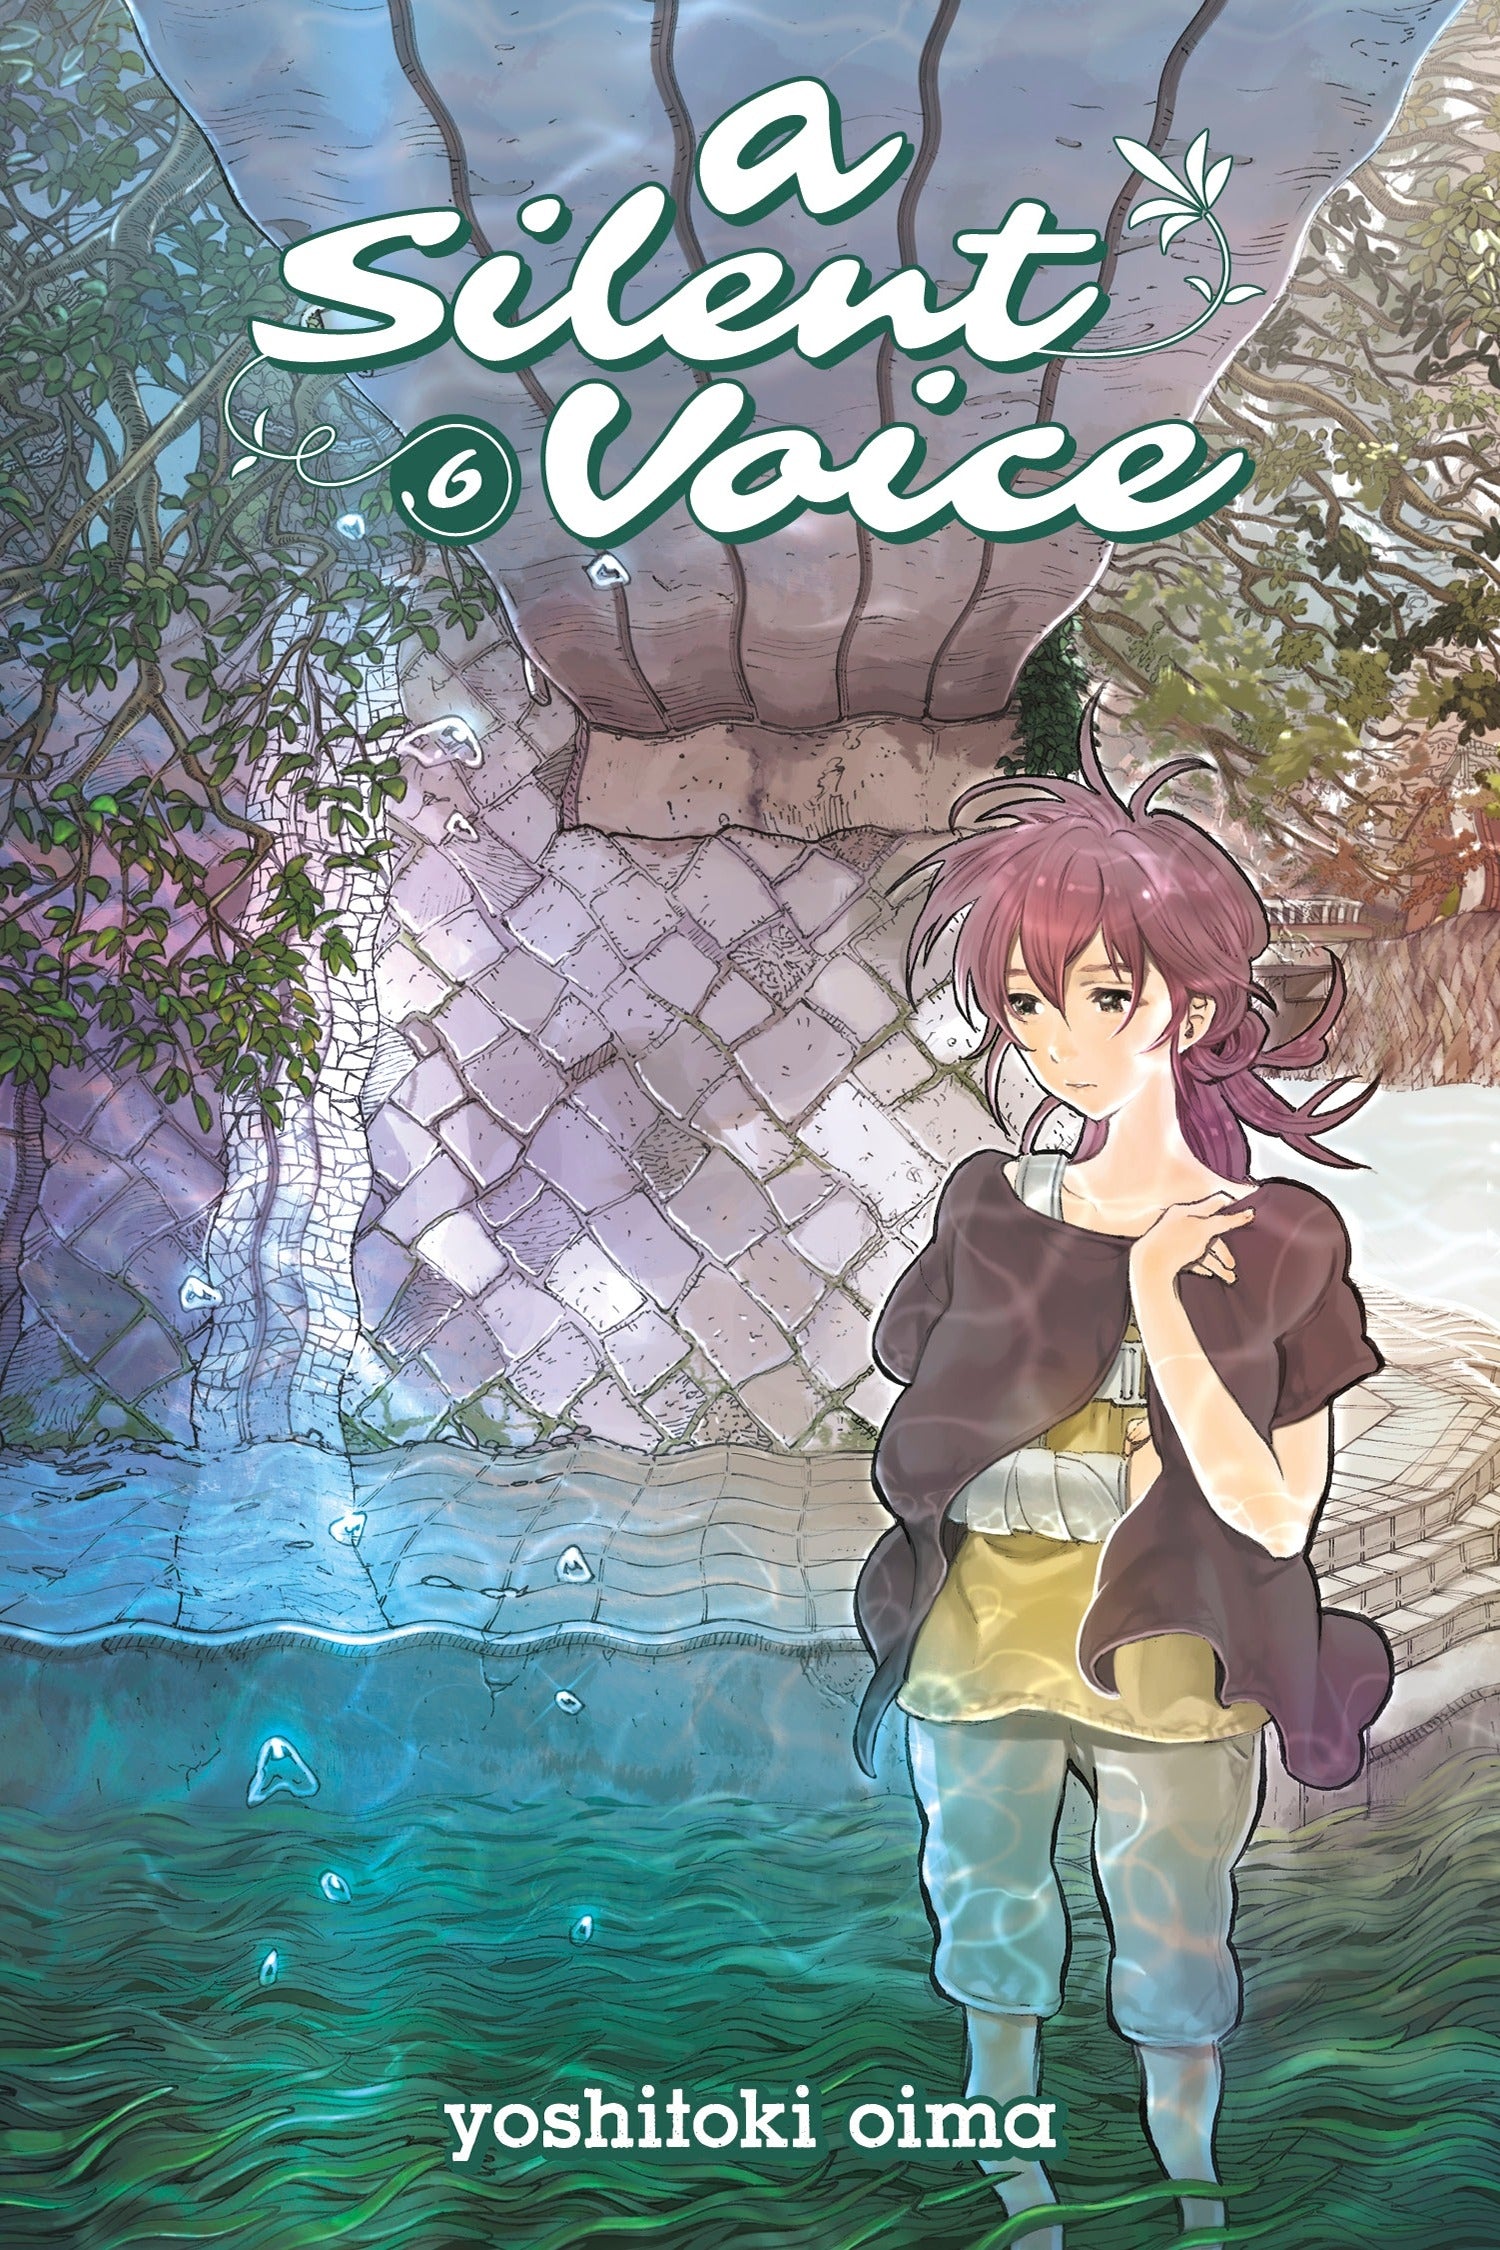 A Silent Voice, Vol 6